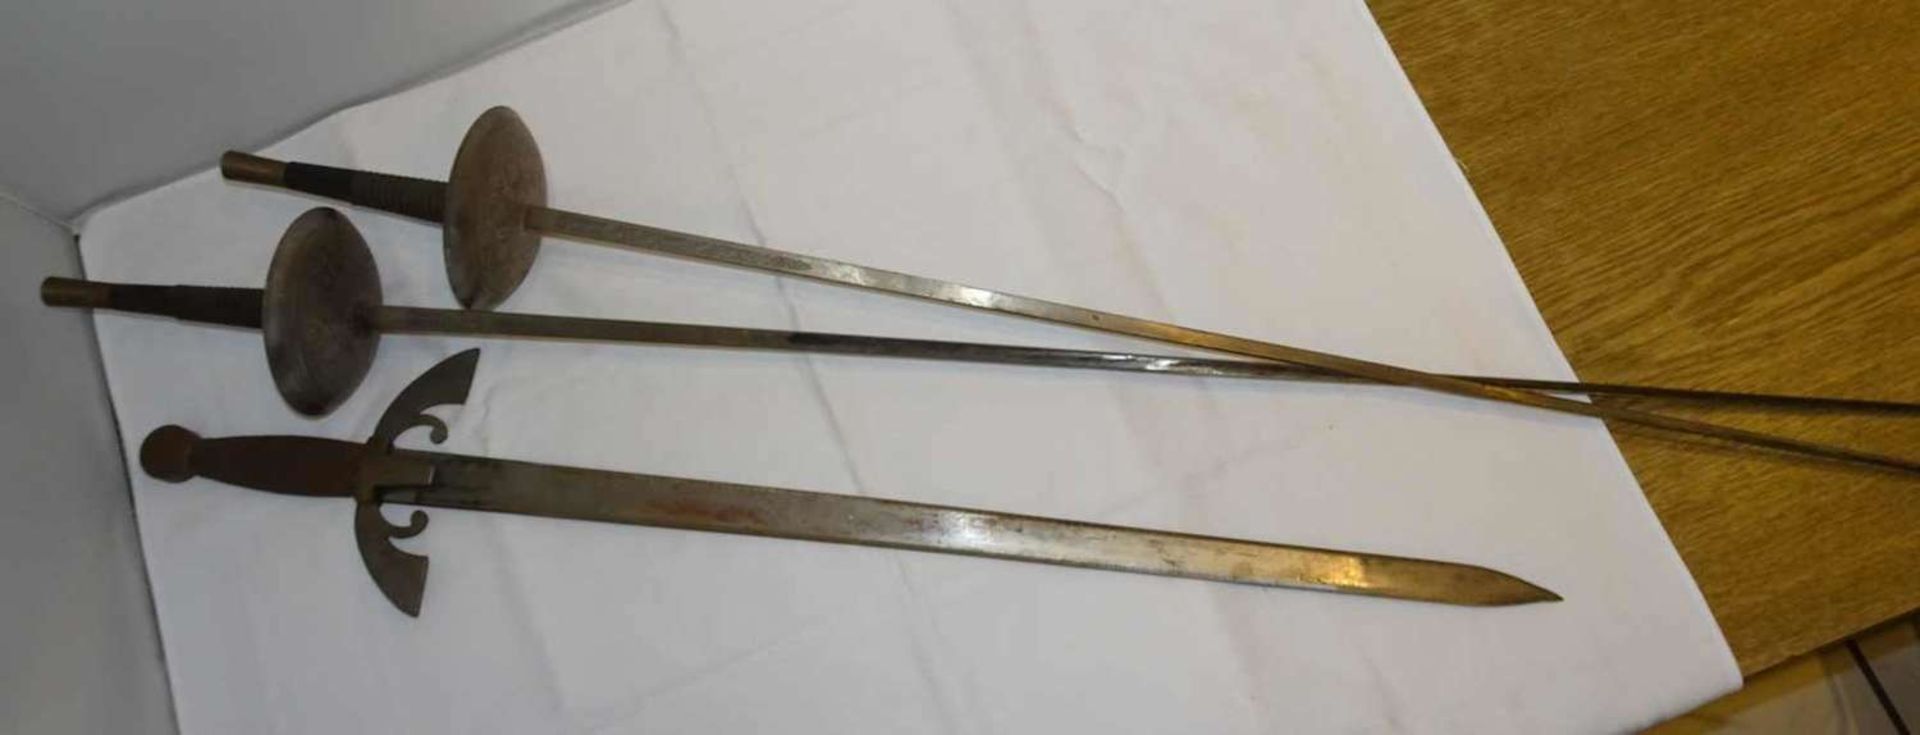 2 Zierdegen, sowie 1 Nachbau eines mittelalterlischen Schwertes, dieses z.B. 74 cm lang. 2